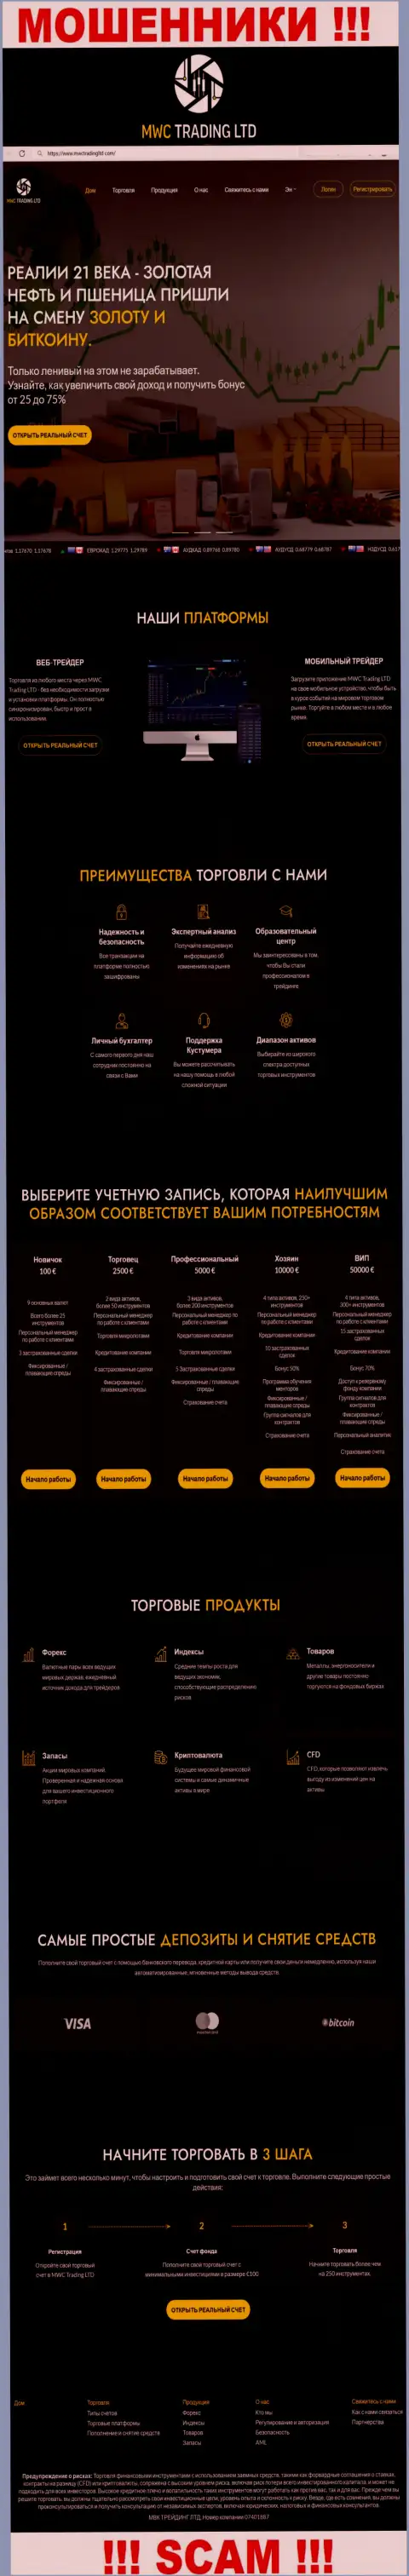 Скрин официального сайта жульнической организации MWCTradingLtd